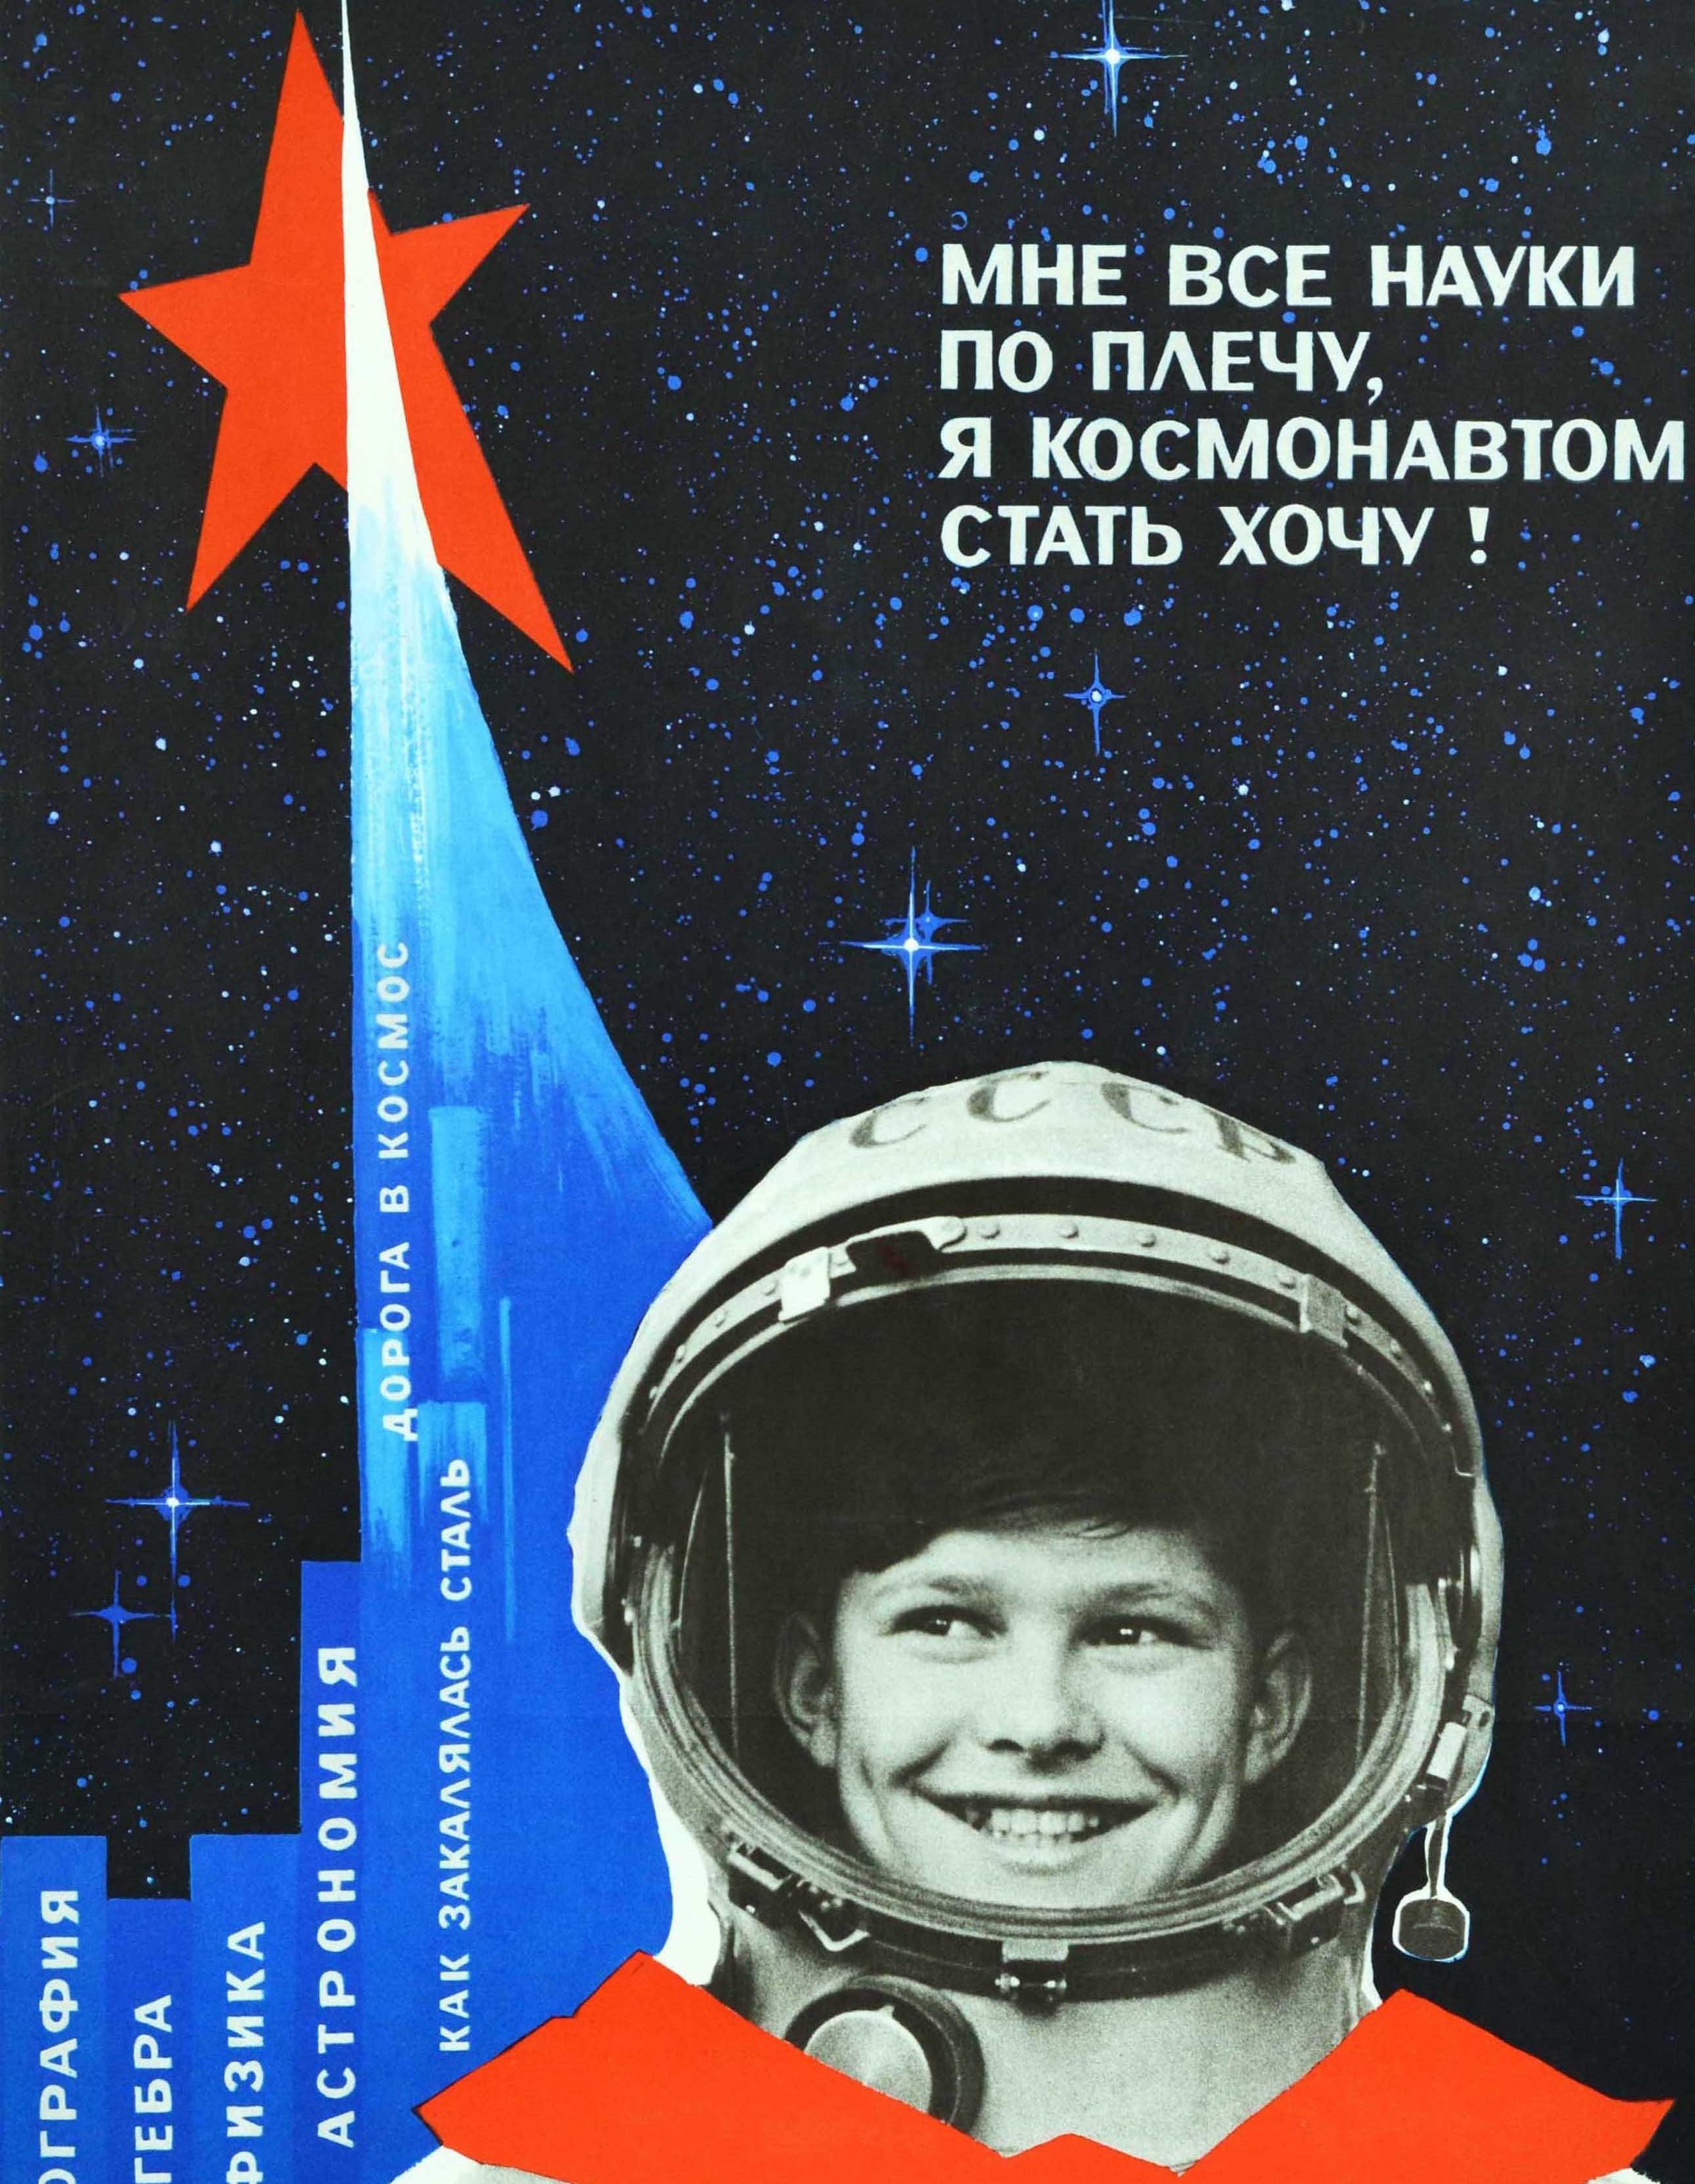 Originales sowjetisches Propagandaplakat zur Weltraumausbildung - Ich kann alle Wissenschaften, ich will Kosmonaut werden! - mit einer Schwarz-Weiß-Fotografie eines lächelnden Jungen in einem CCCP/UdSSR-Kosmonauten-Raumanzug mit einer roten